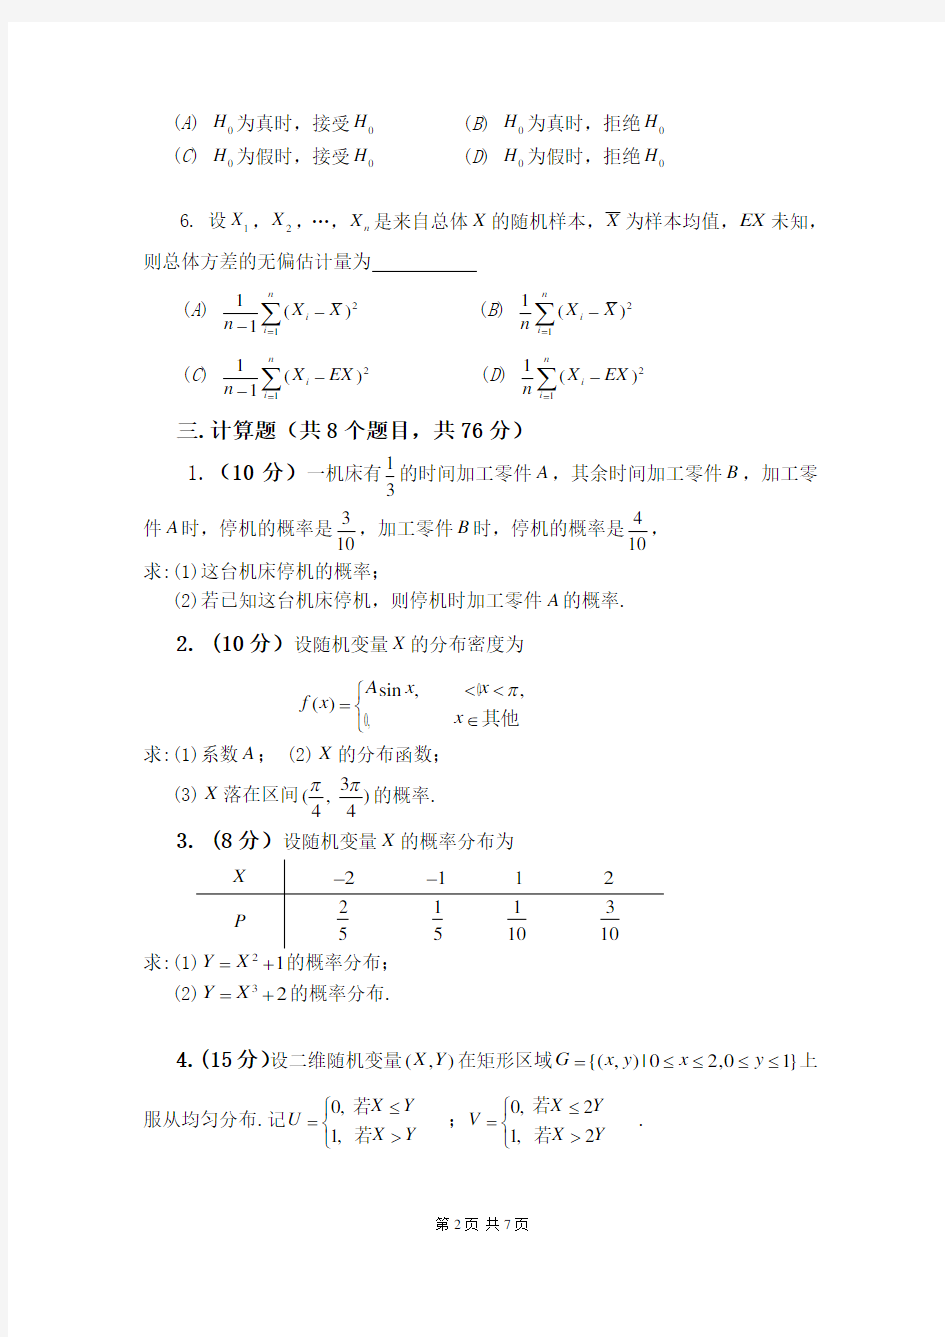 2013-2014中国石油大学(华东)概率论与数理统计期末考试